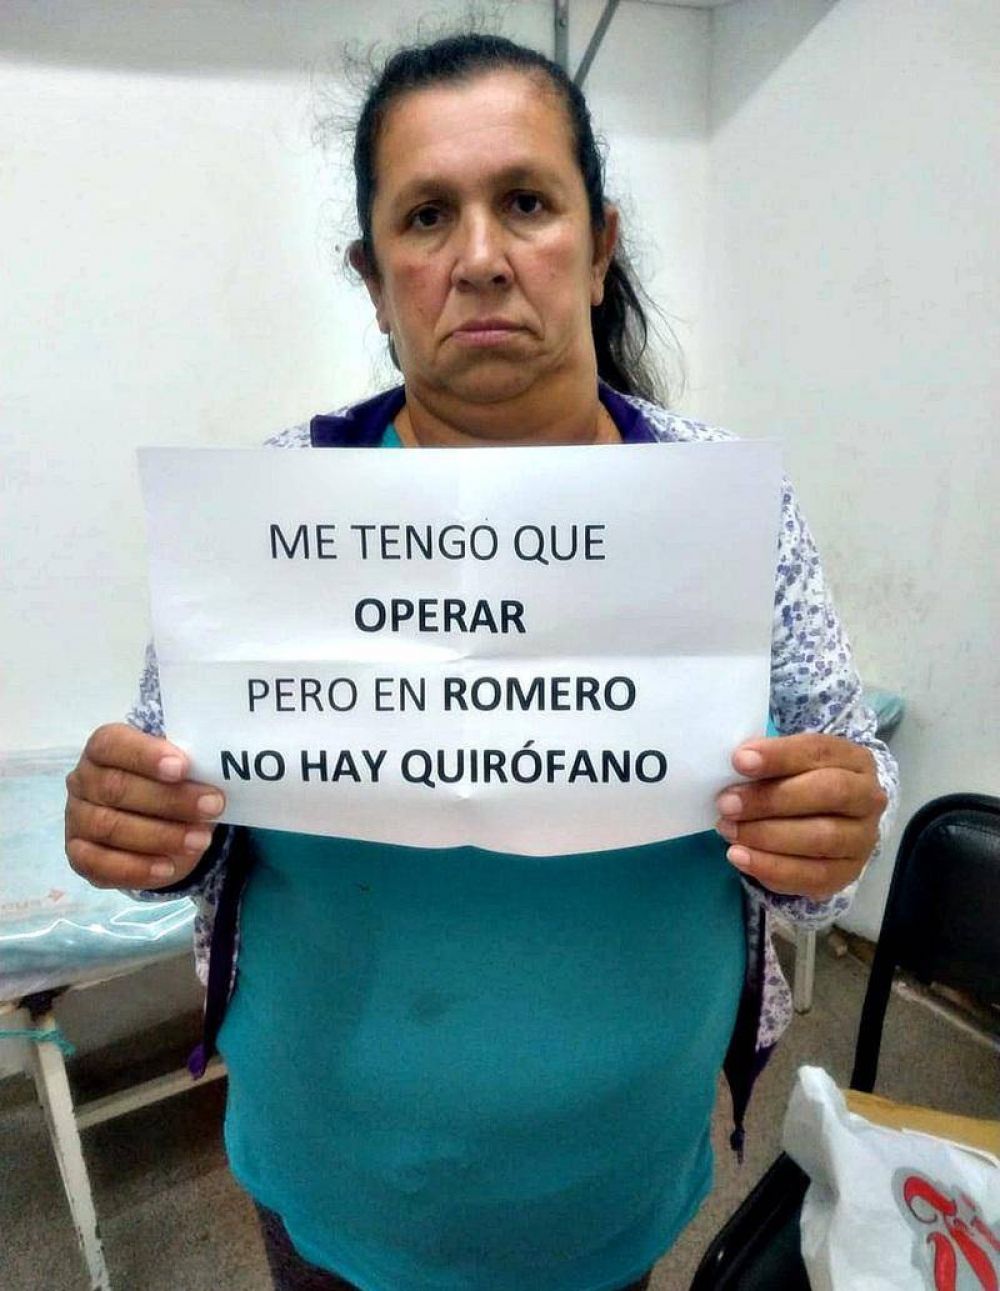 Finalmente cerraron los quirfanos del Hospital de Melchor Romero por falta de presupuesto